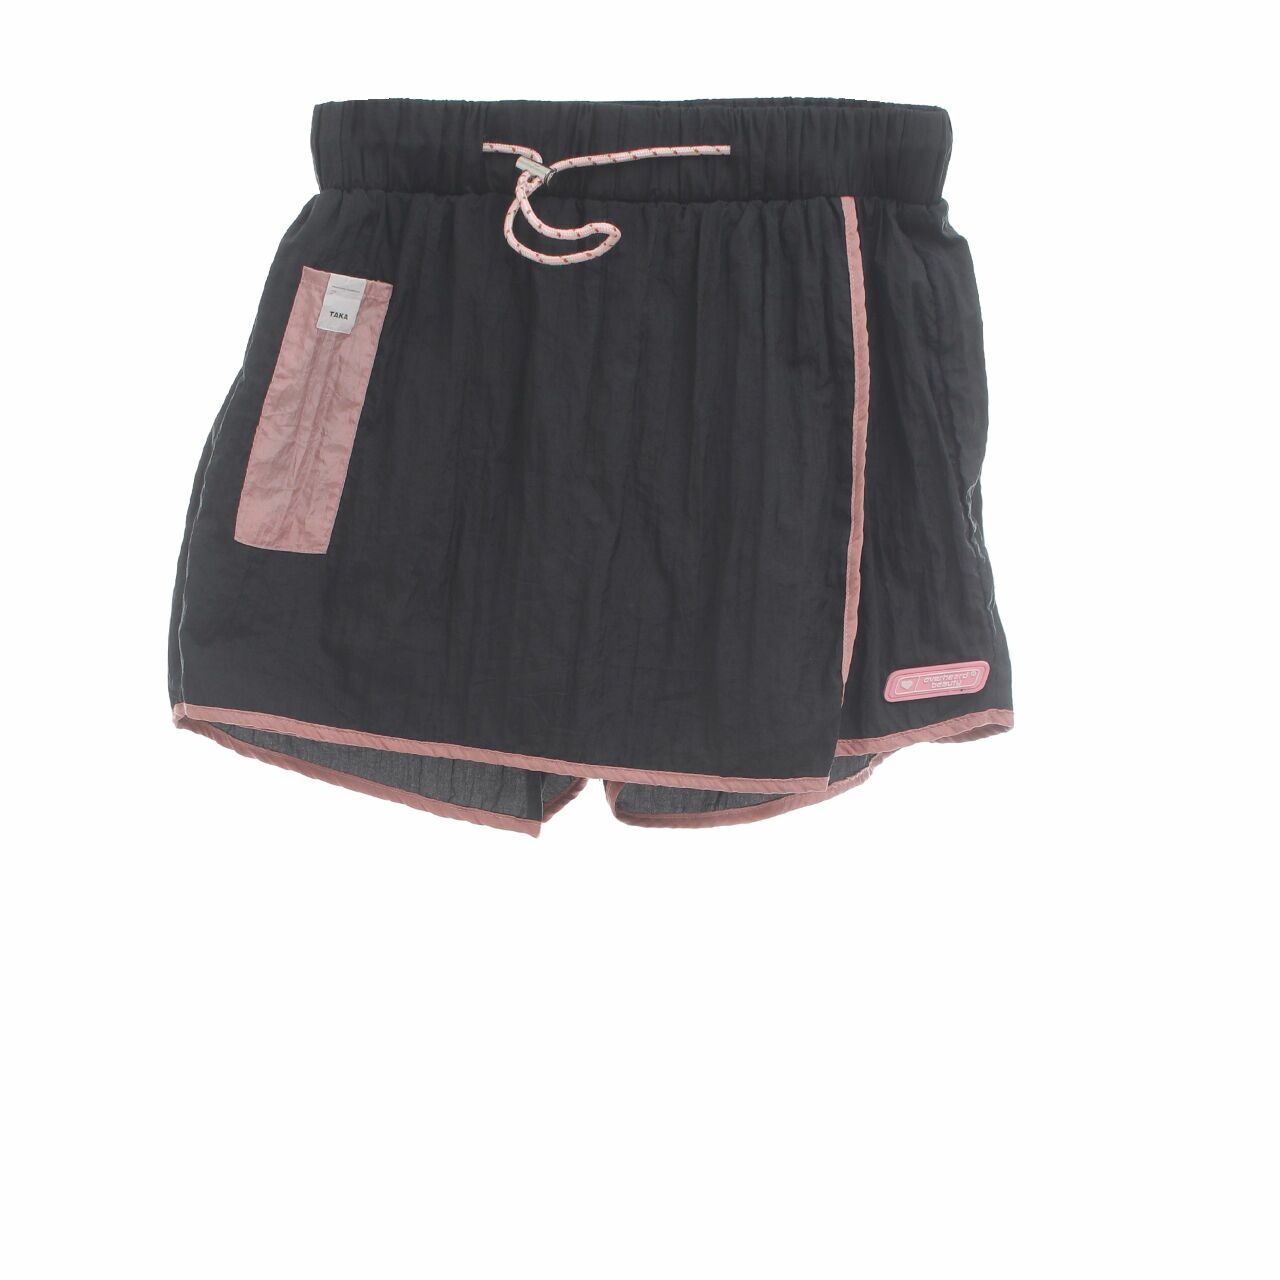 Taka Black & Peach Skort Short Pants	